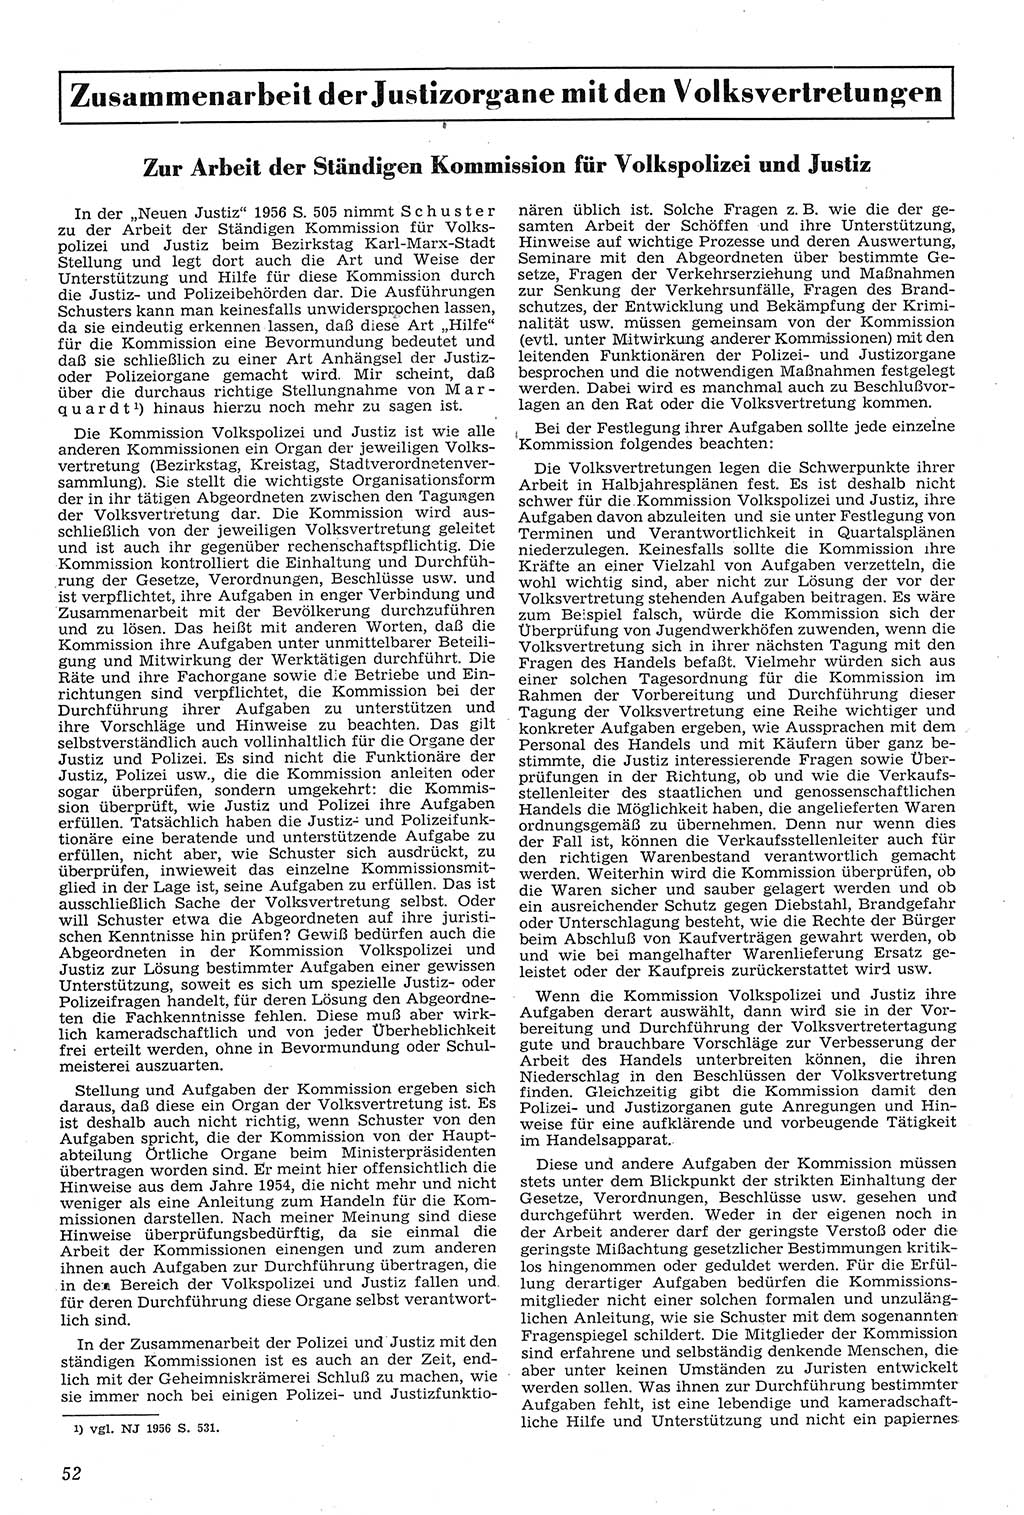 Neue Justiz (NJ), Zeitschrift für Recht und Rechtswissenschaft [Deutsche Demokratische Republik (DDR)], 11. Jahrgang 1957, Seite 52 (NJ DDR 1957, S. 52)